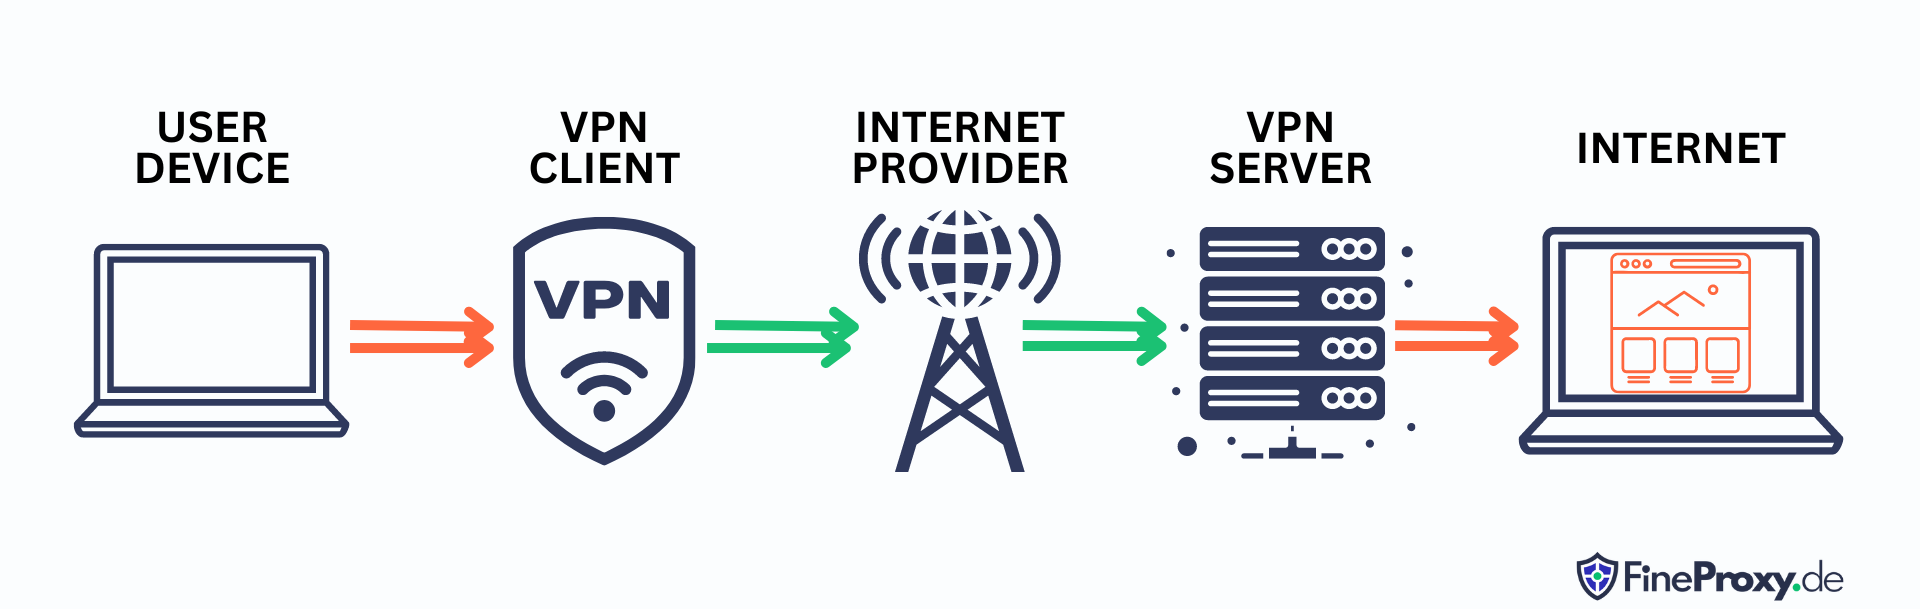 ¿Cómo funciona un servicio VPN?